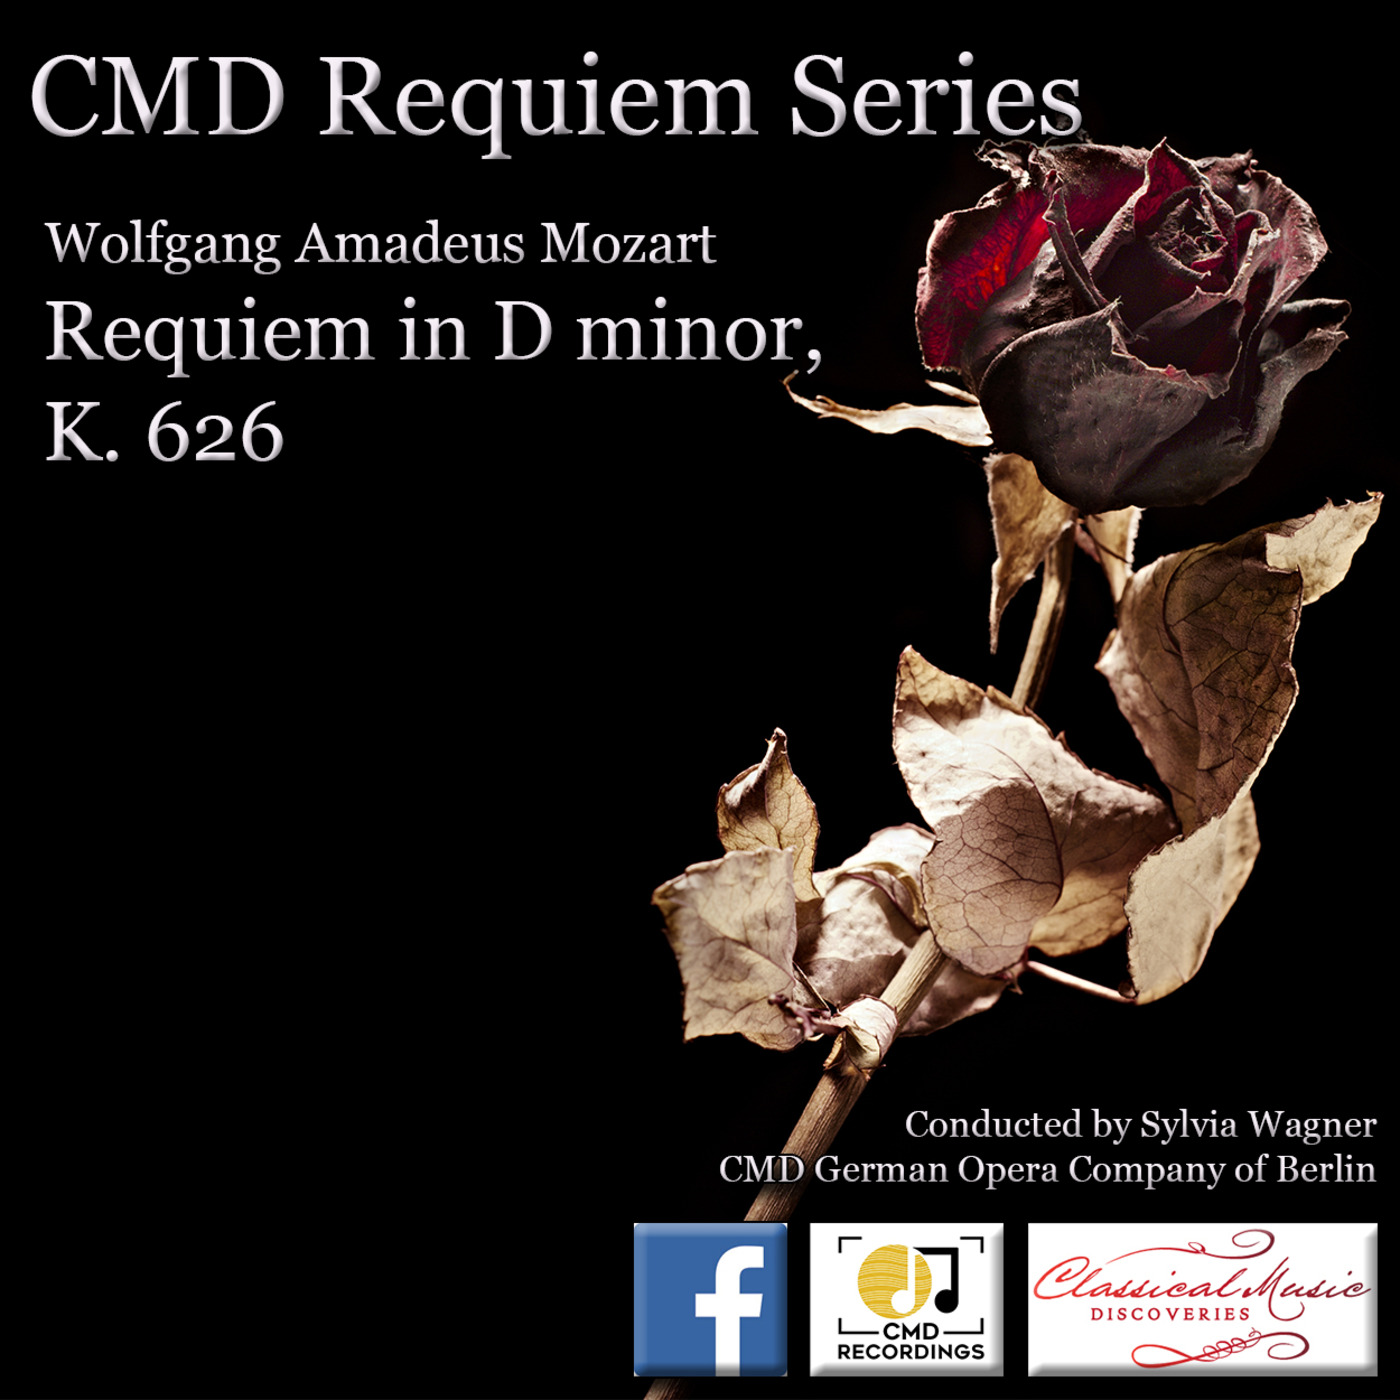 Episode 28: 14028 Mozart: Requiem in D minor, K. 626